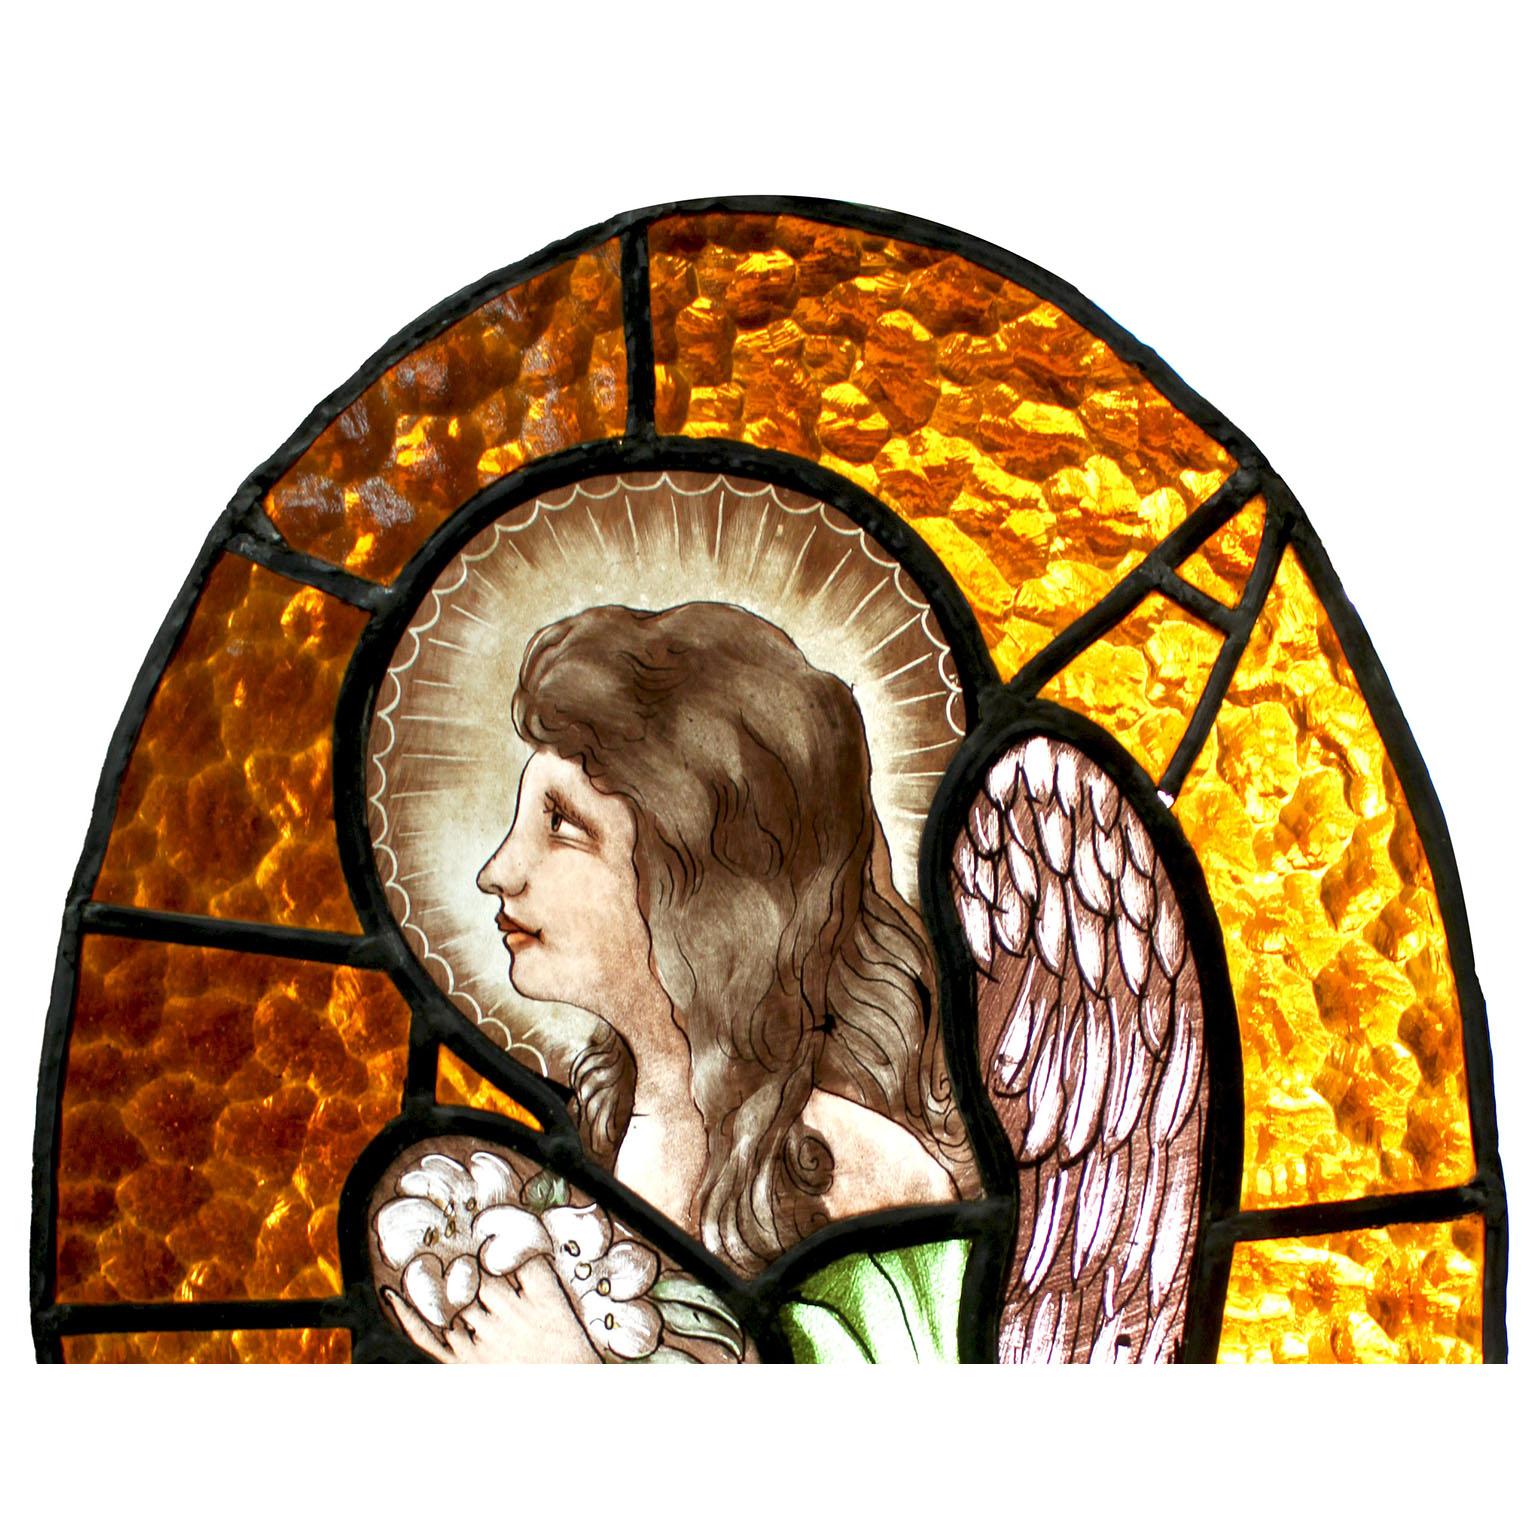 Panneau de vitrail néoclassique français du début du 20e siècle représentant un ange ou un cupidon en prière. Ce charmant panneau ou fenêtre en verre multicolore de forme ovale, peint à la main, représente une vue latérale d'un ange ou d'un cupidon